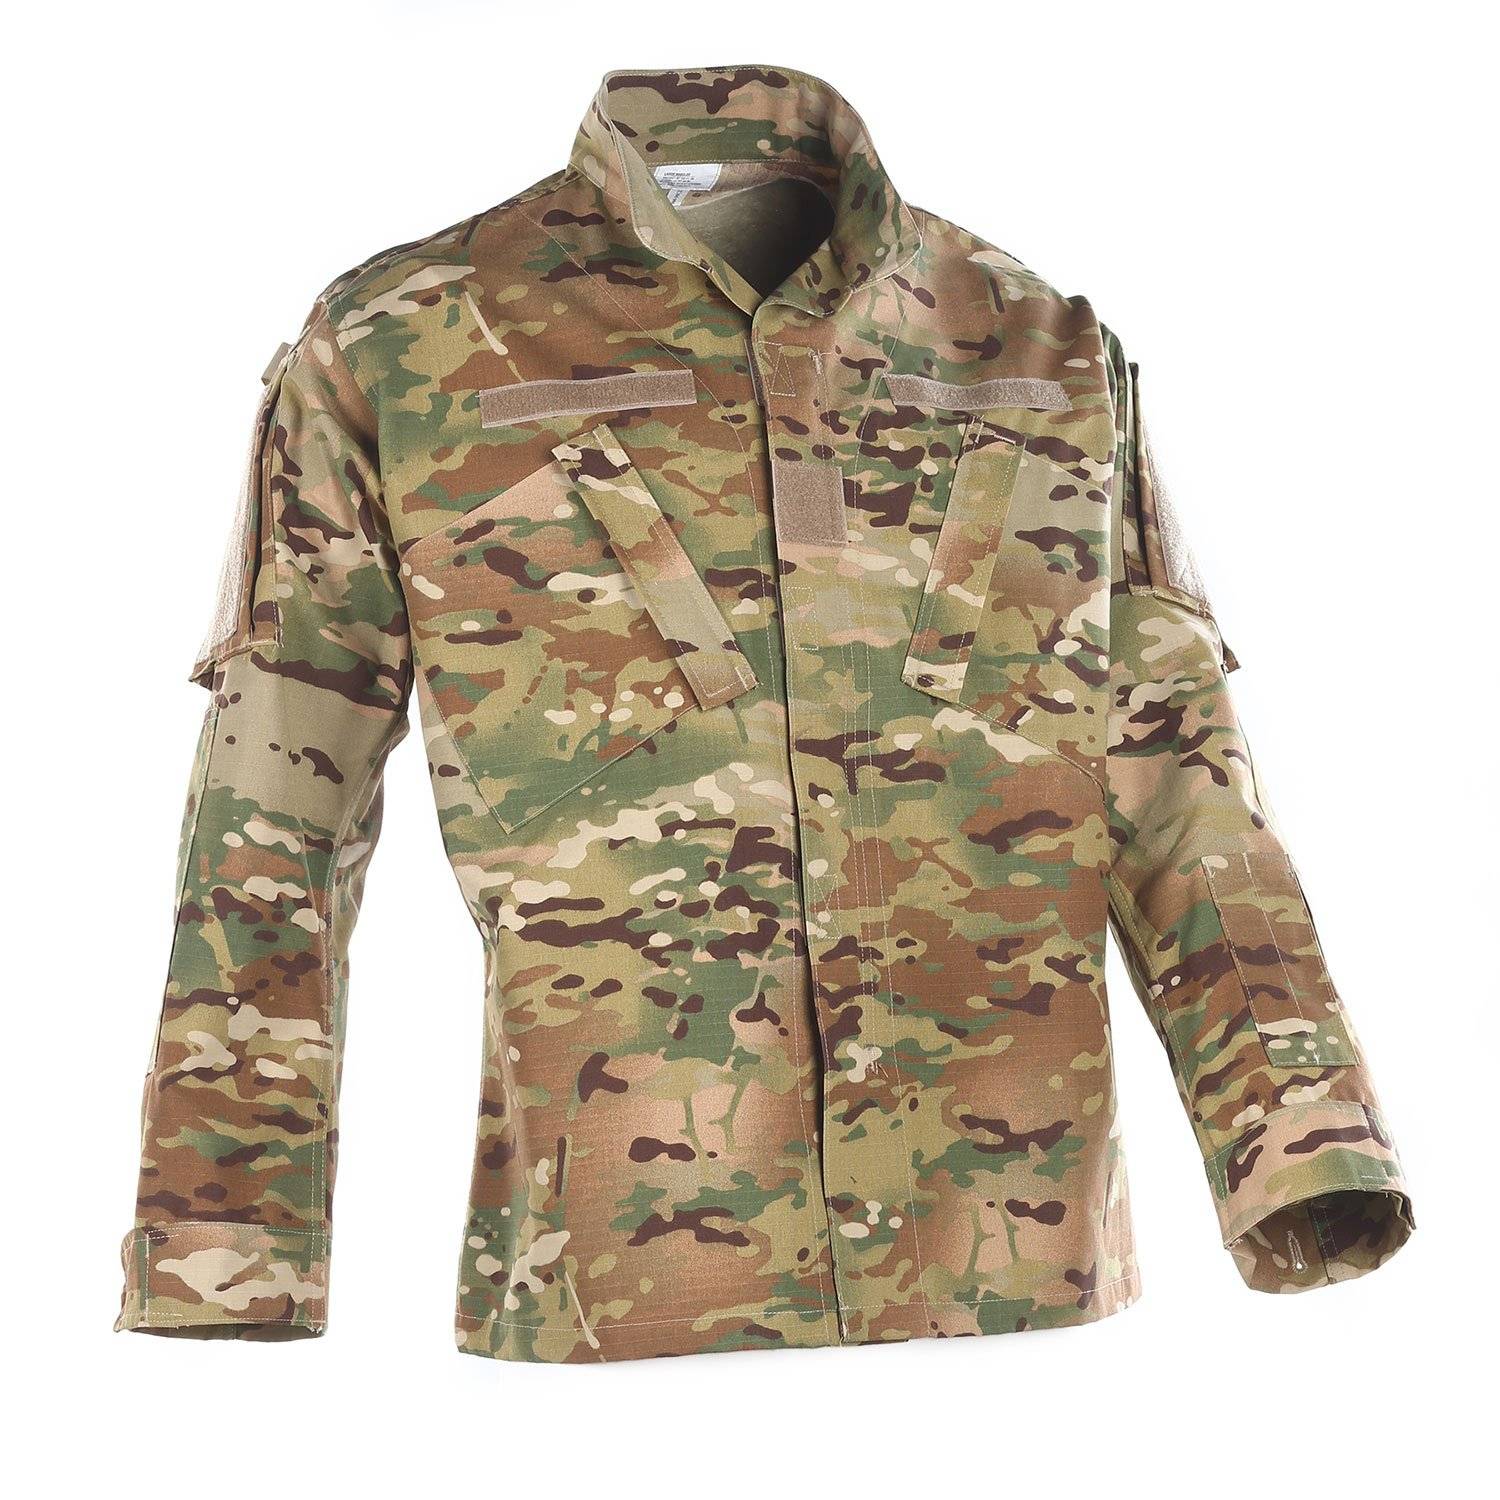 TRU-SPEC Army Combat Uniform Shirt